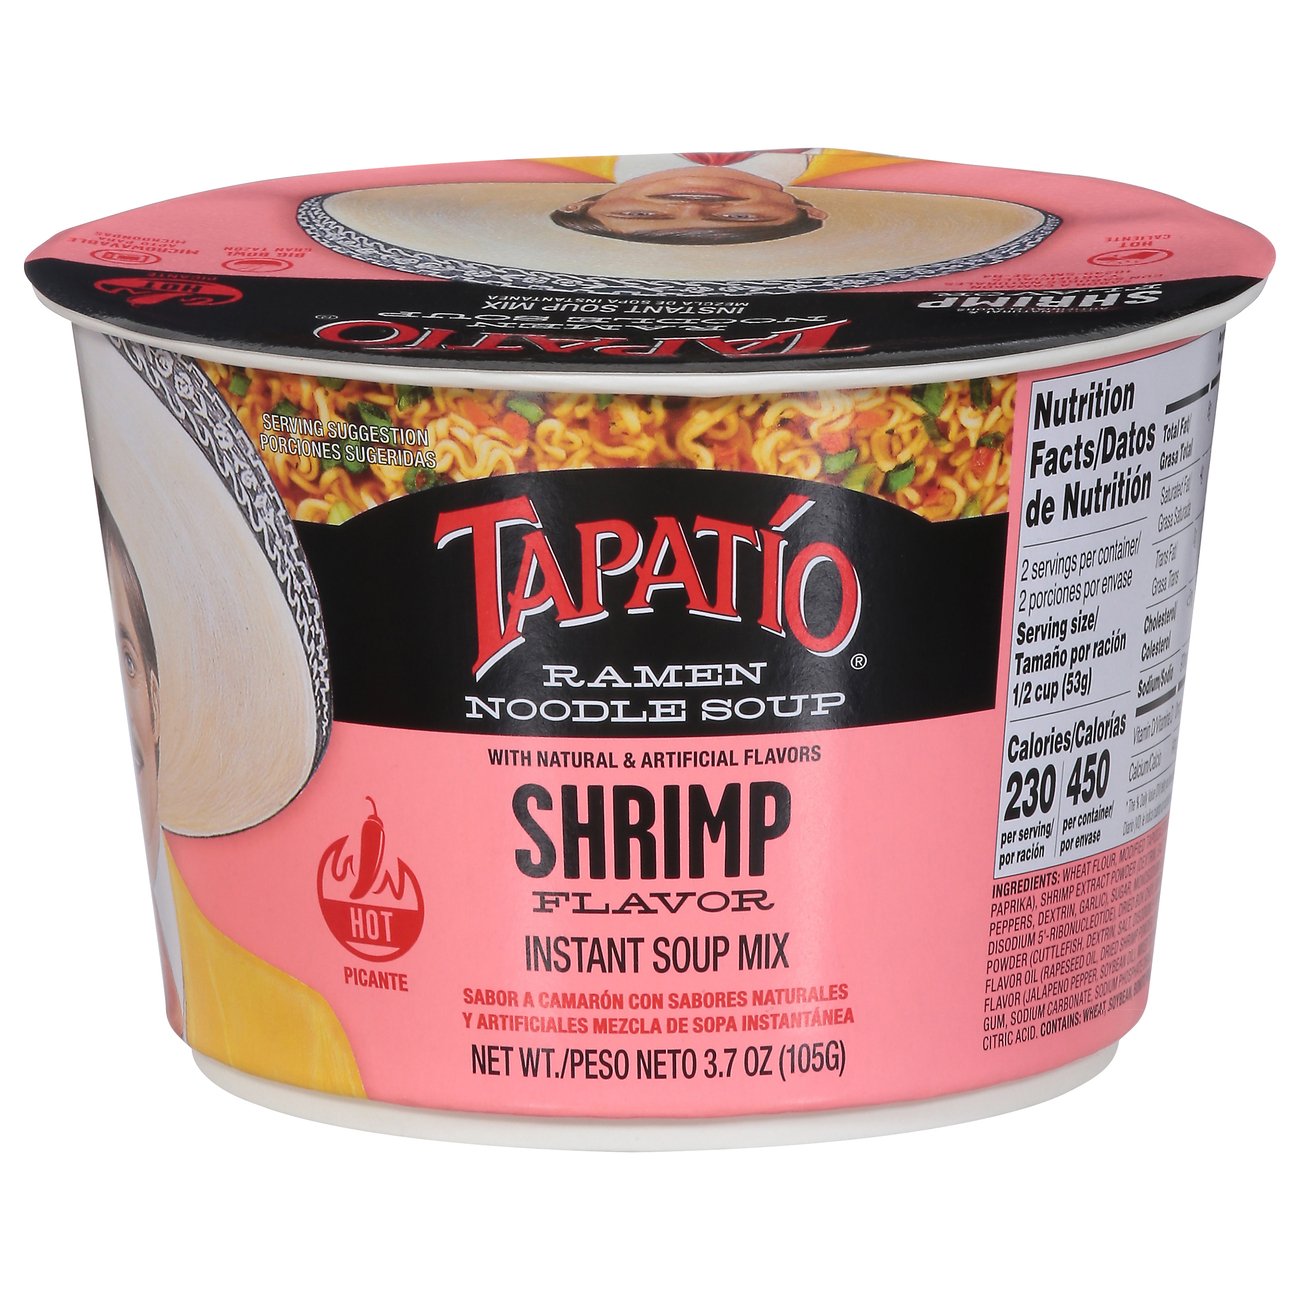 Tapatio Shrimp Ramen Noodle Soup Bowl - Shop Soups & Chili at H-E-B